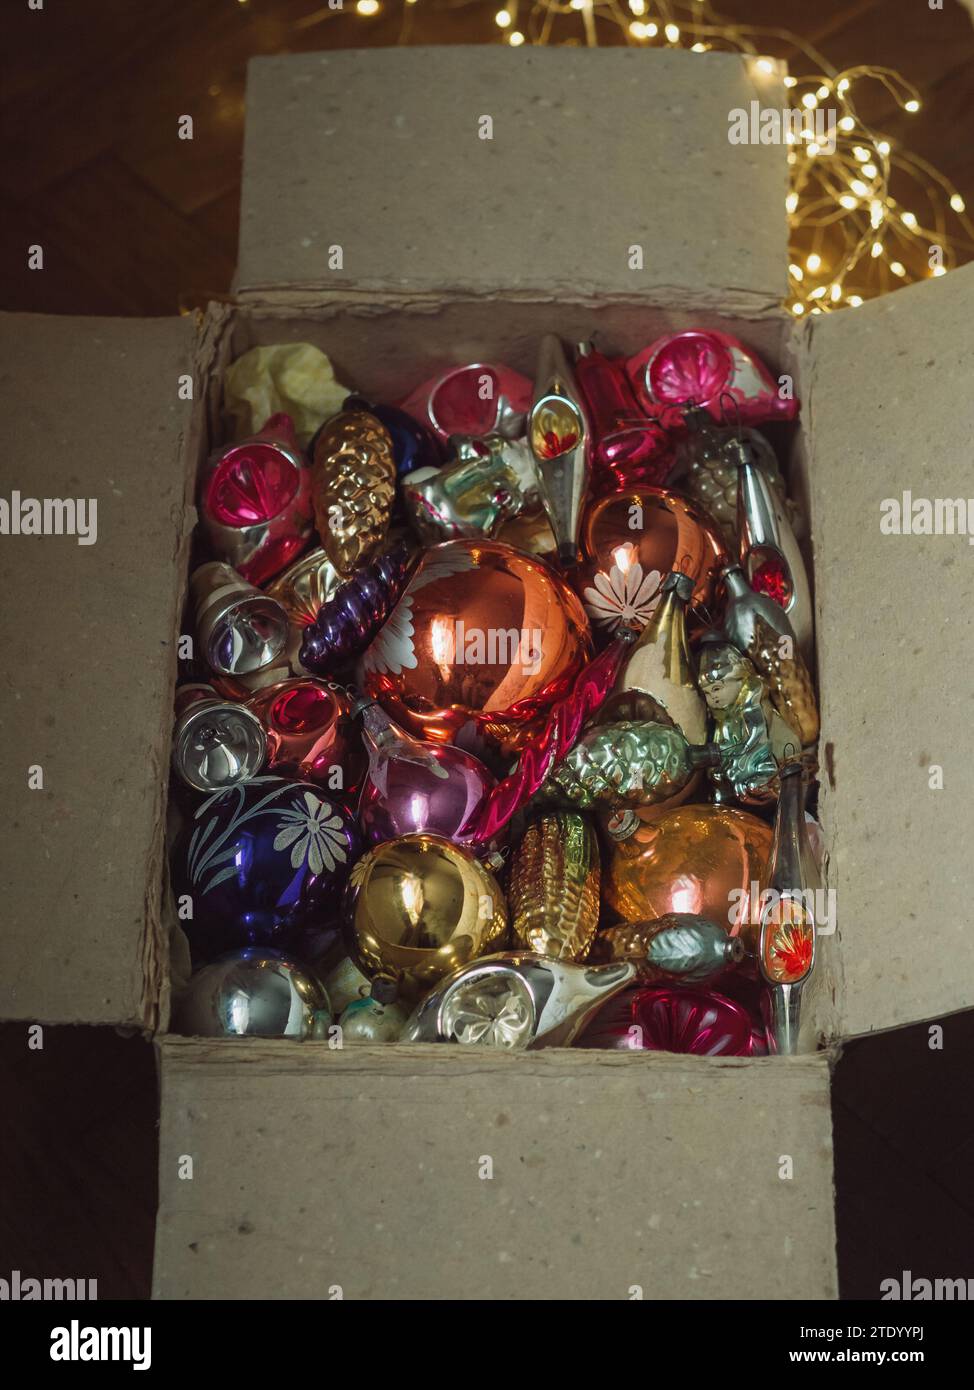 Immagine verticale direttamente dall'alto di una vecchia scatola aperta con decorazioni vintage sull'albero di Natale e luci elettriche moderne. Magia del tempo dell'avvento Foto Stock